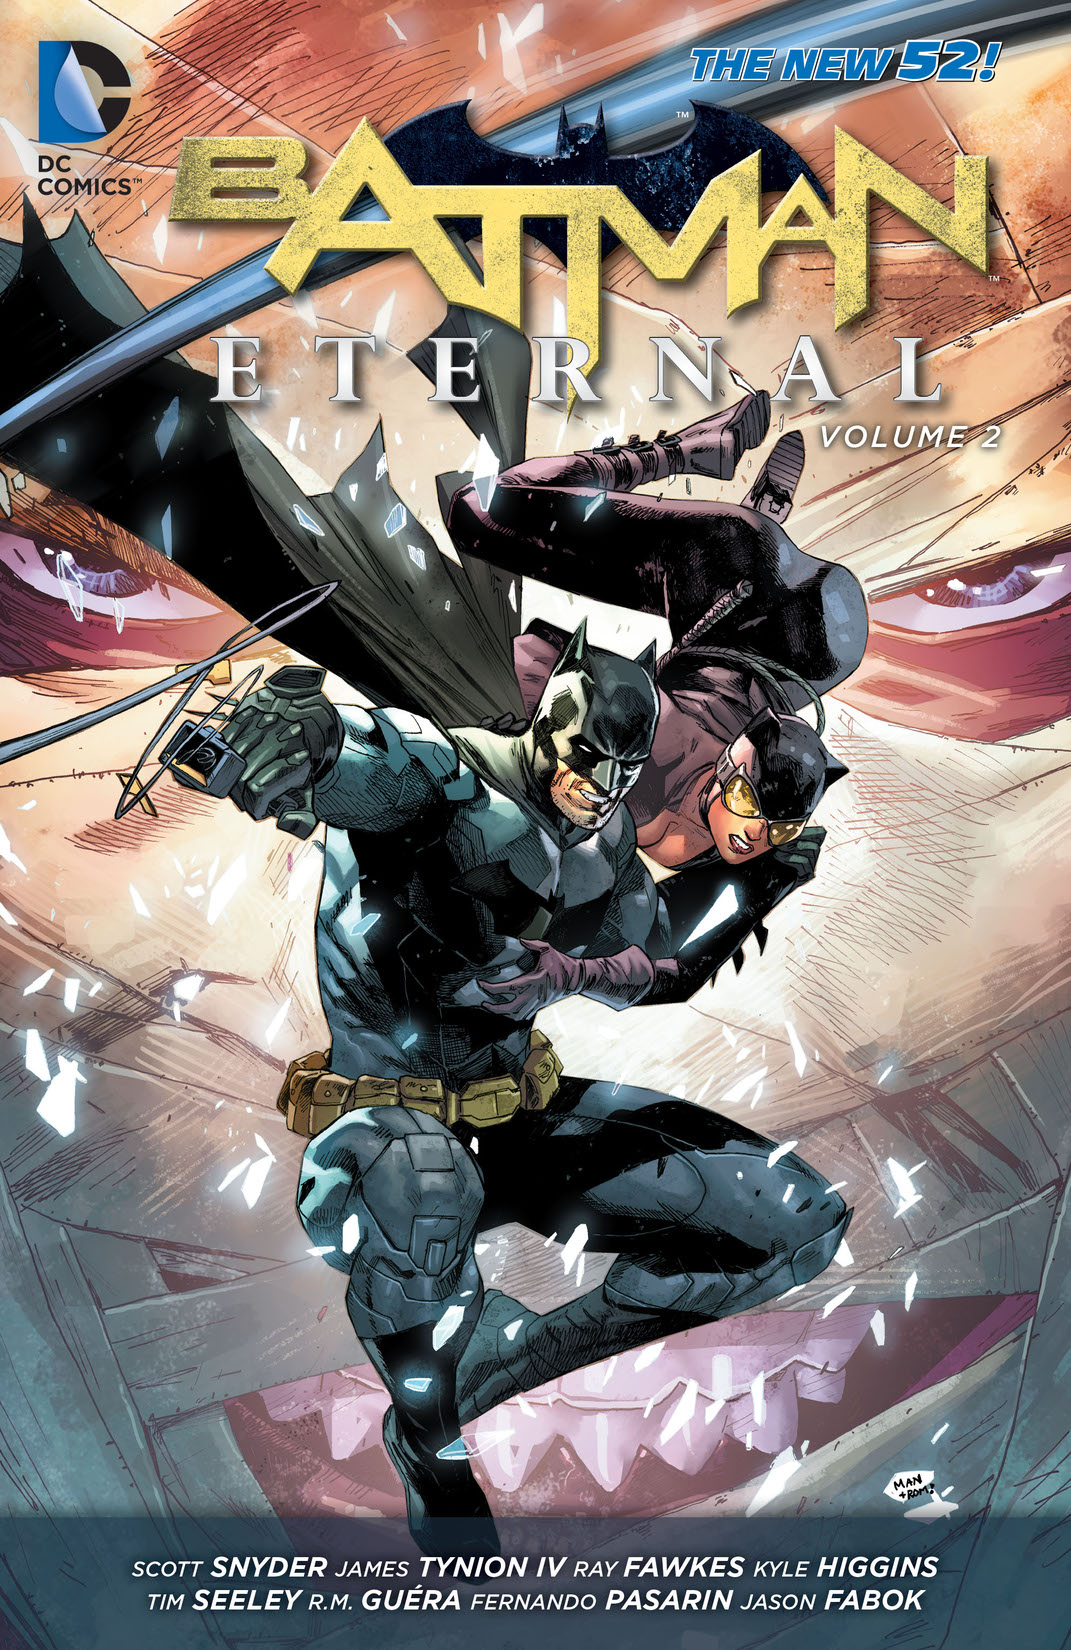 Batman Eternal Vol. 2 preview images